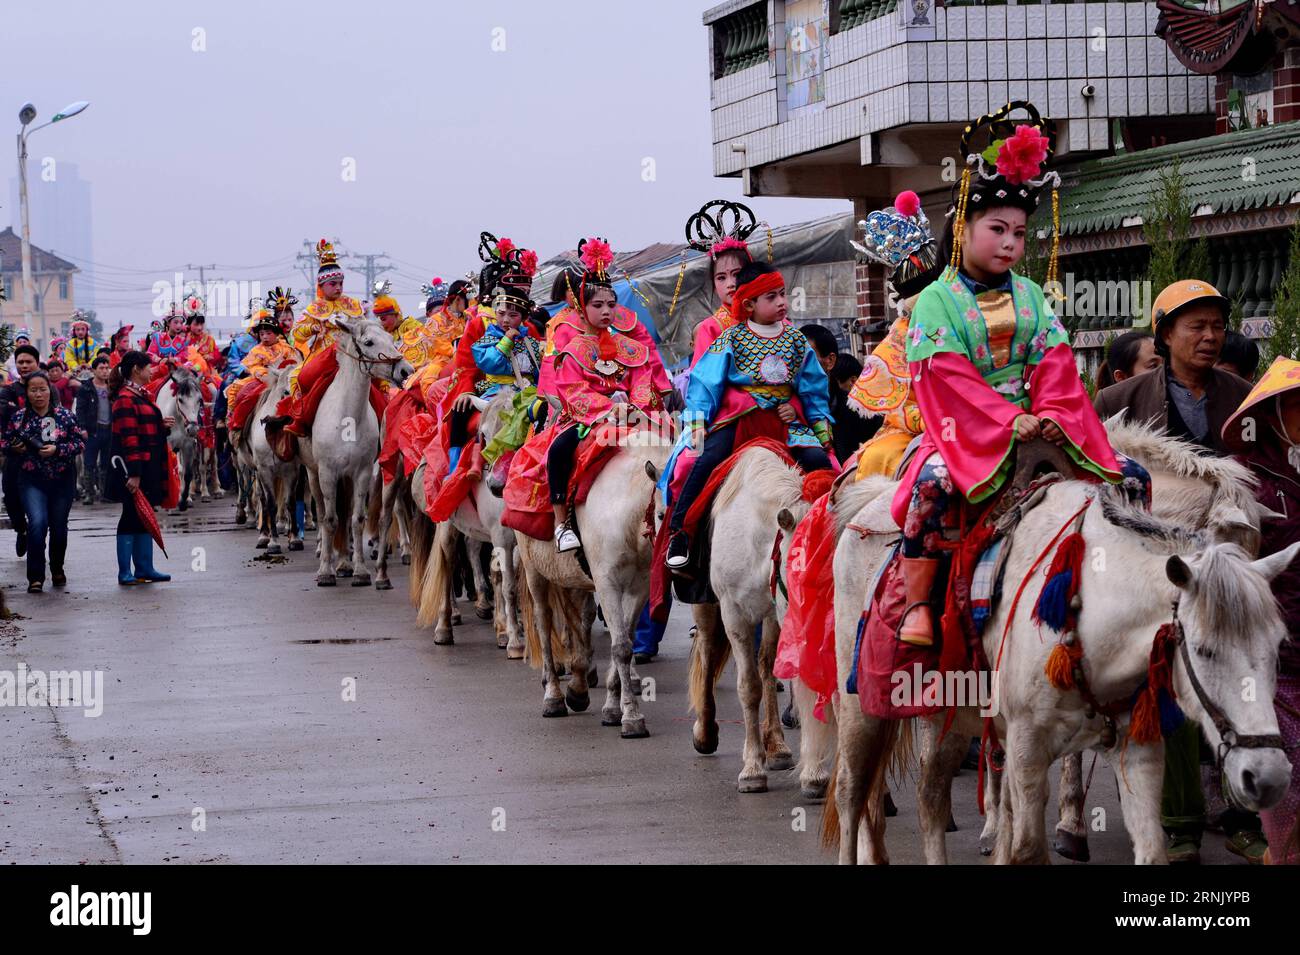 (170222) -- PUTIAN, 22 febbraio 2017 -- sfilata di bambini a cavallo nel villaggio di Yangwei, città di Putian nella provincia del Fujian della Cina sudorientale, 22 febbraio 2017. I bambini vestiti da figure leggendarie sfilano per le strade qui nel 26° giorno del primo mese del calendario lunare cinese. Pregare per la pace, la prosperità e il buon raccolto è una tradizione di lunga data. ) (Lb) CHINA-FUJIAN-PUTIAN-TRADITION (CN) ZhangxGuojun PUBLICATIONxNOTxINxCHN Putian 22 febbraio 2017 Parata dei bambini A cavallo nel villaggio di Putian città della provincia del Fujian della Cina sudorientale 22 febbraio 2017 bambini vestiti da figure leggendarie P Foto Stock